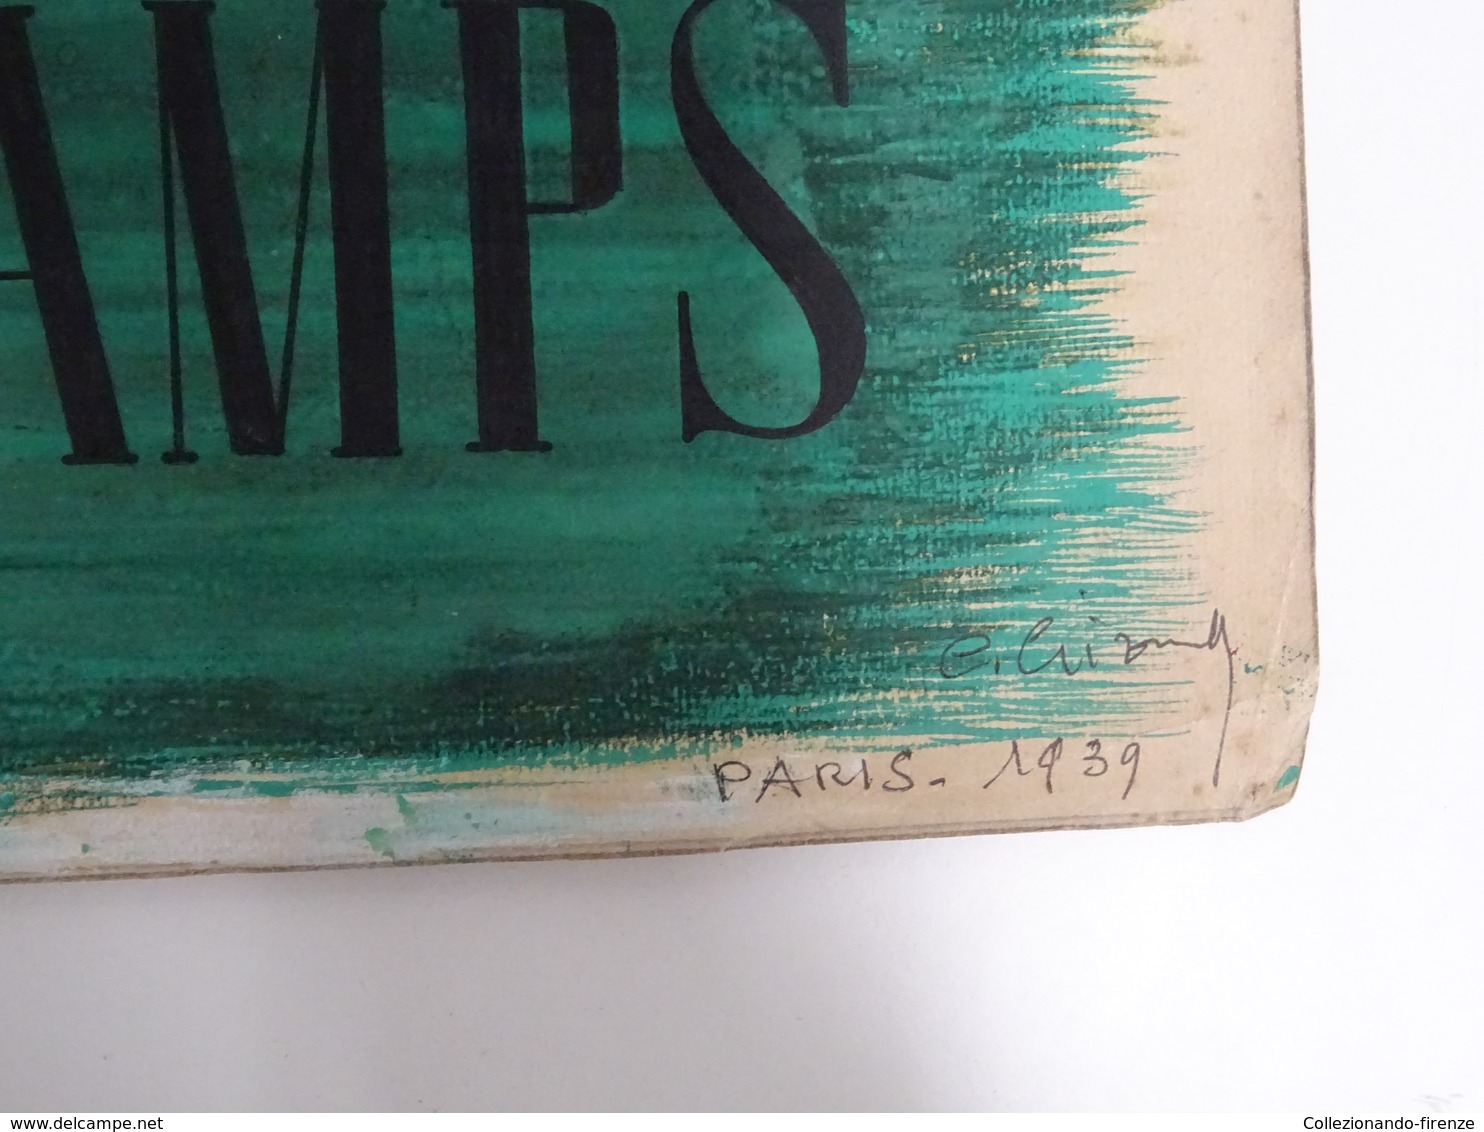 !SCONTI! Bozzetto originale Grand Prix Longchamps acquerello su cartoncino firmato e datato Parigi 1939